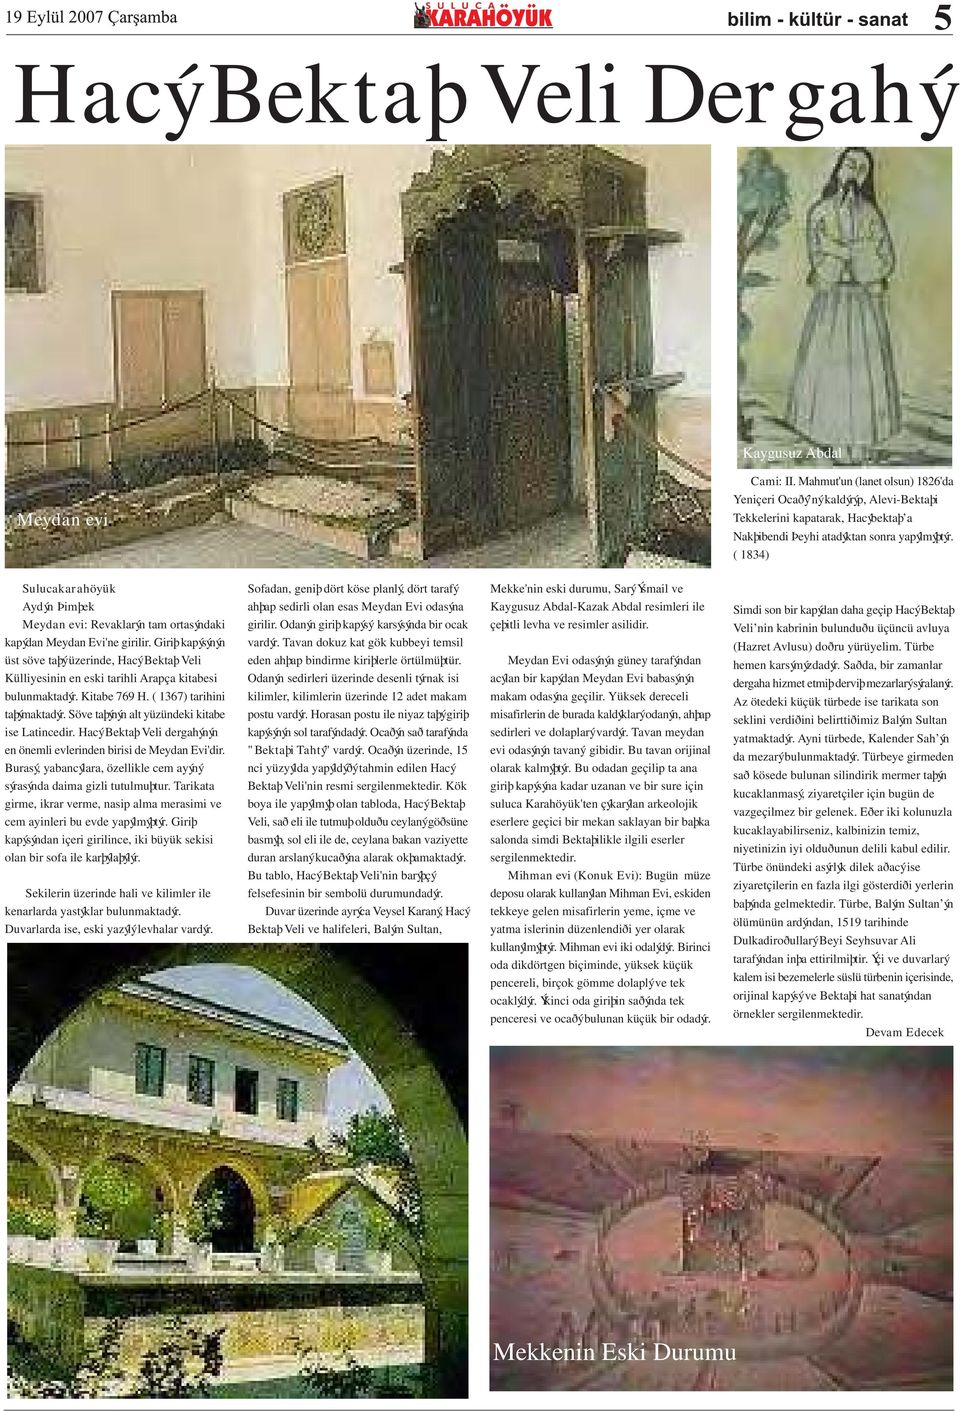 ( 1834) Sulucakarahöyük Aydýn Þimþek Meydan evi: Revaklarýn tam ortasýndaki kapýdan Meydan Evi'ne girilir.